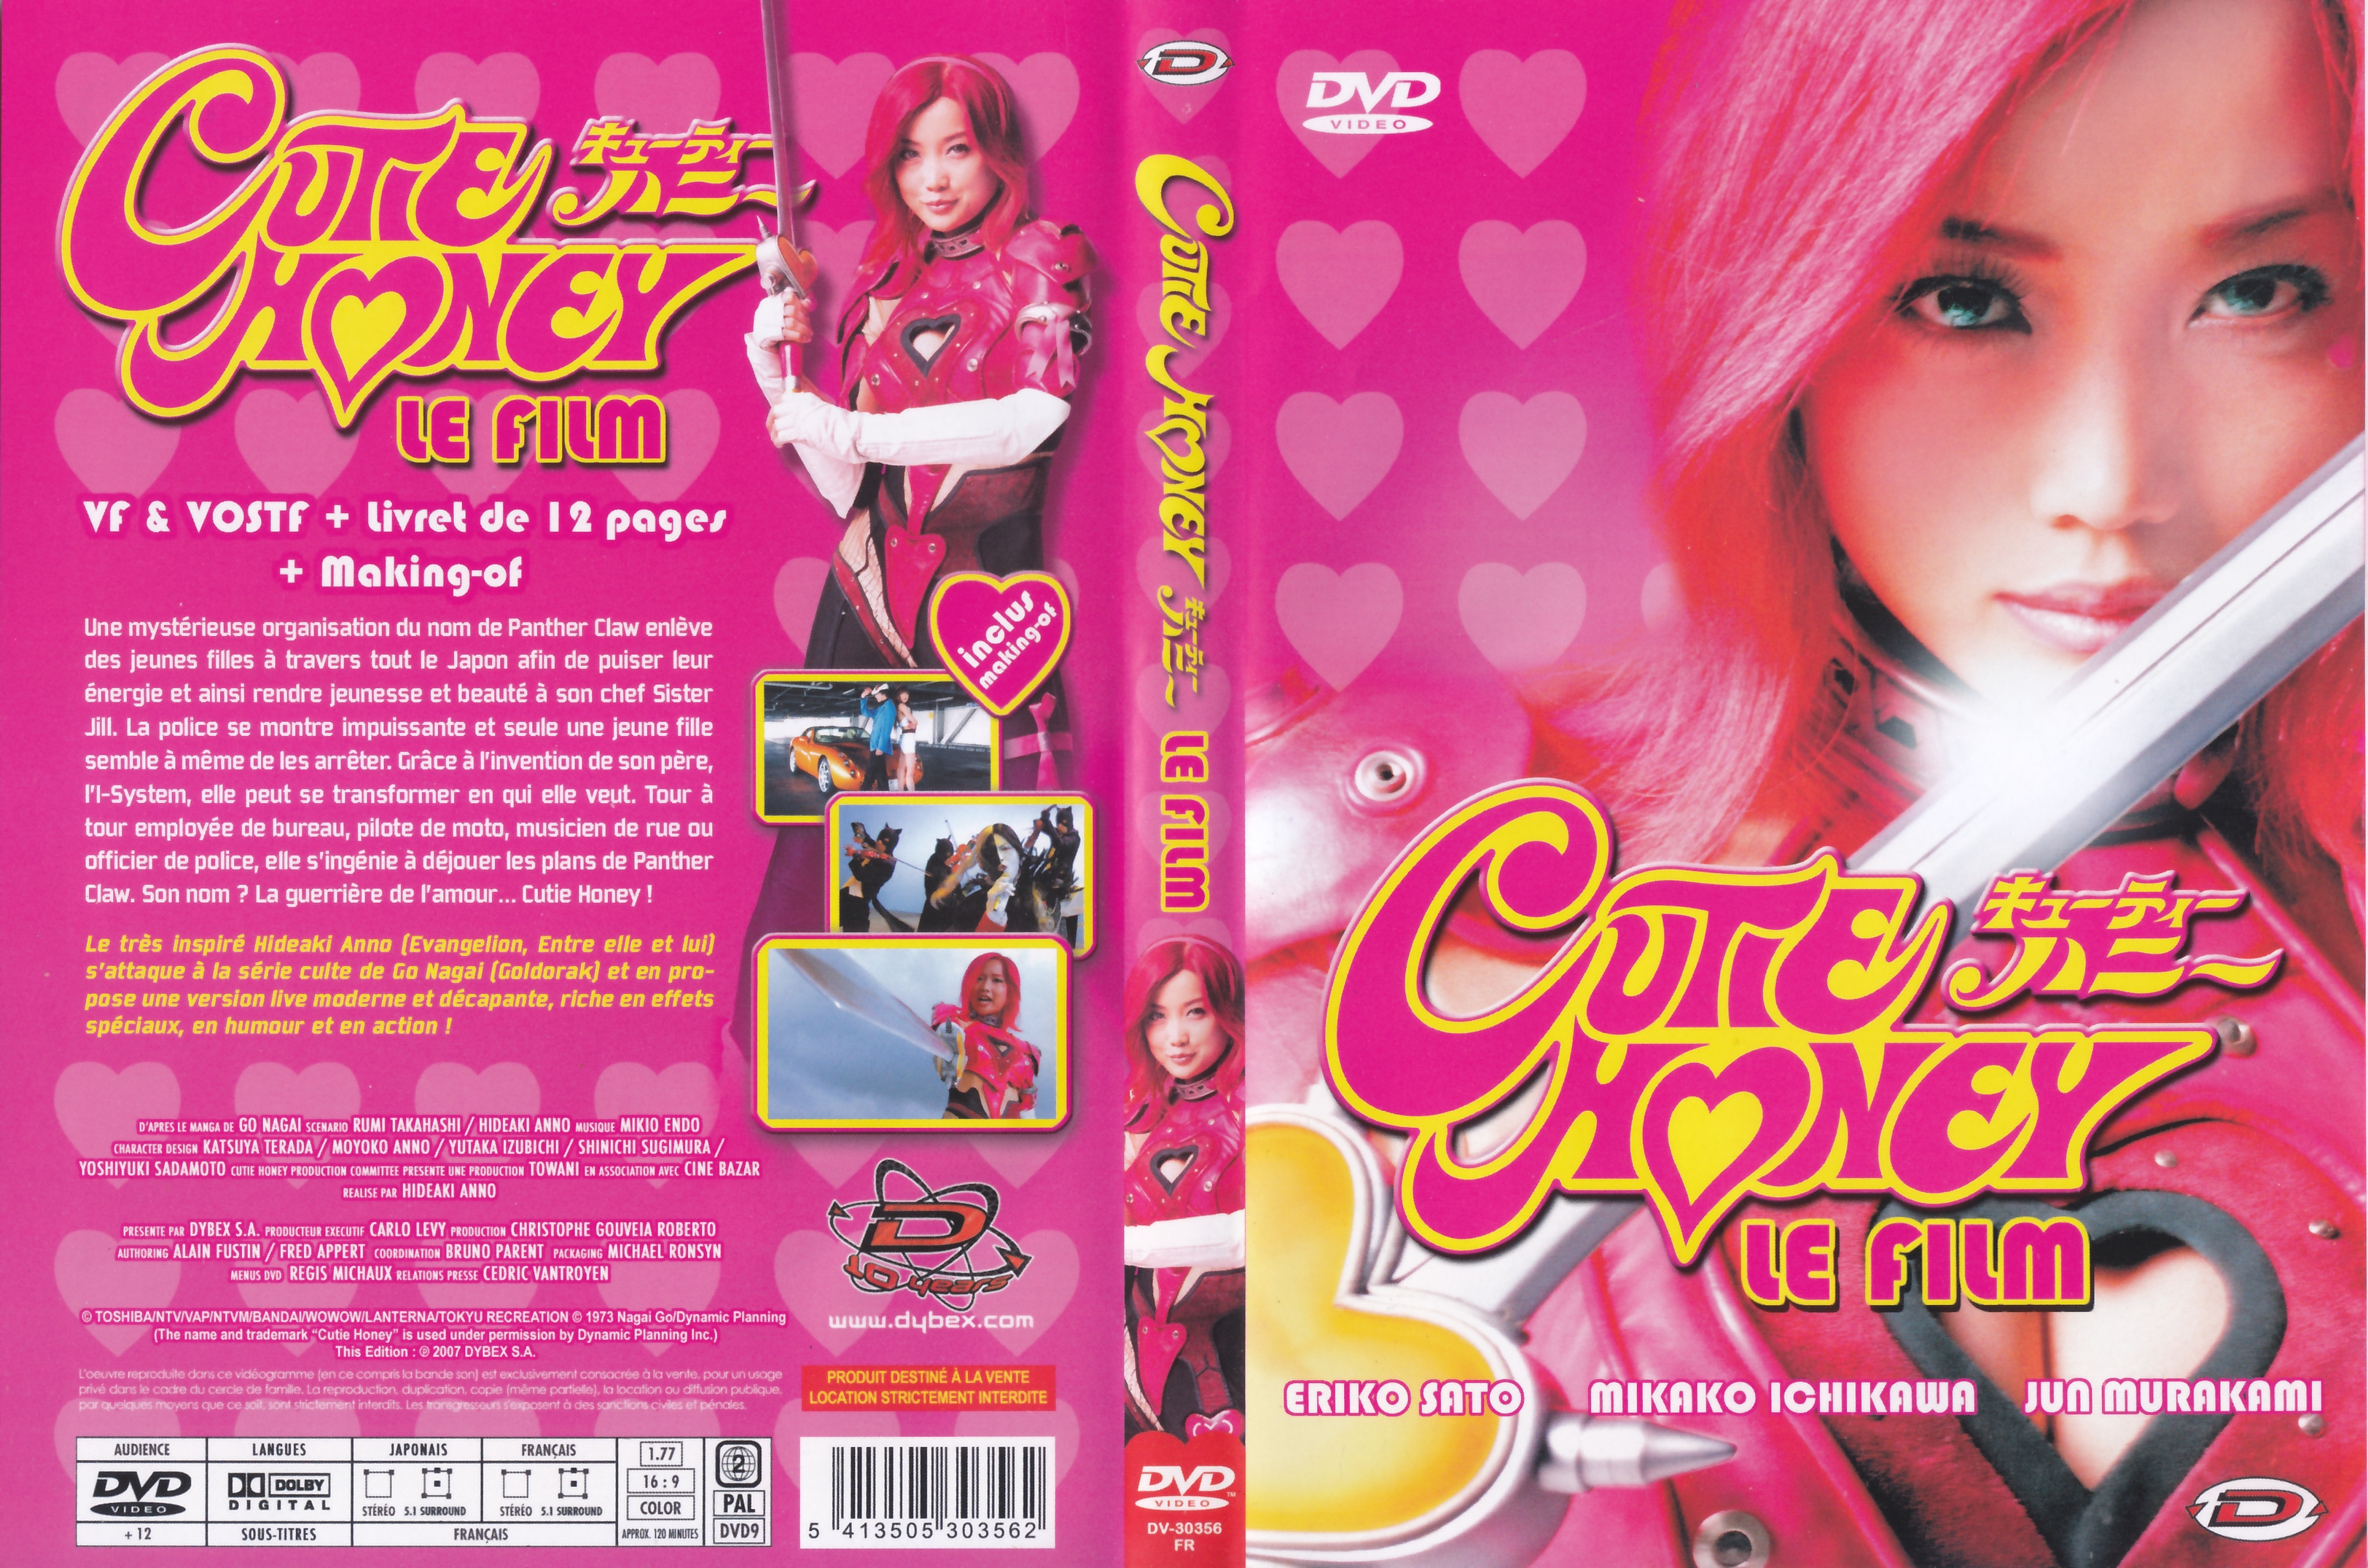 Jaquette DVD Cutie Honey v2